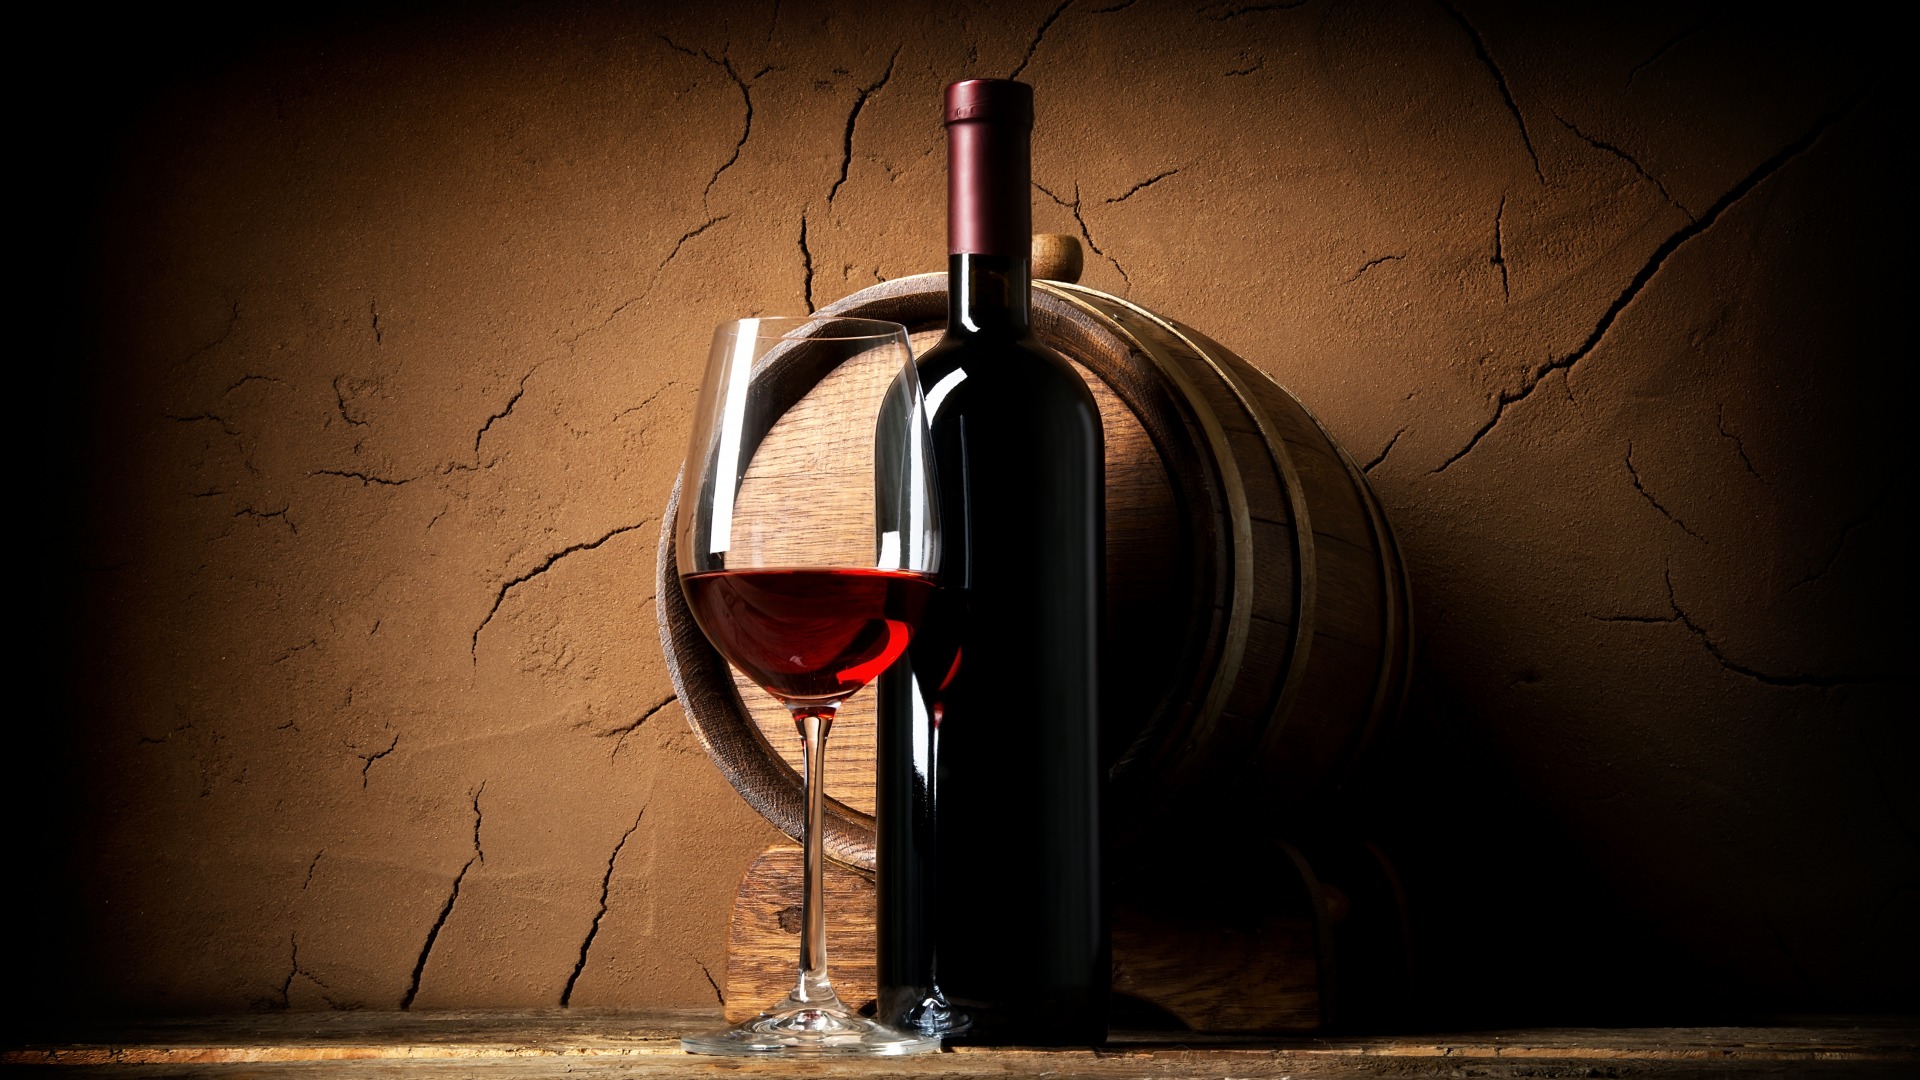 تصویر جذاب برای پوستر تبلیغاتی از شراب قرمز و جام 